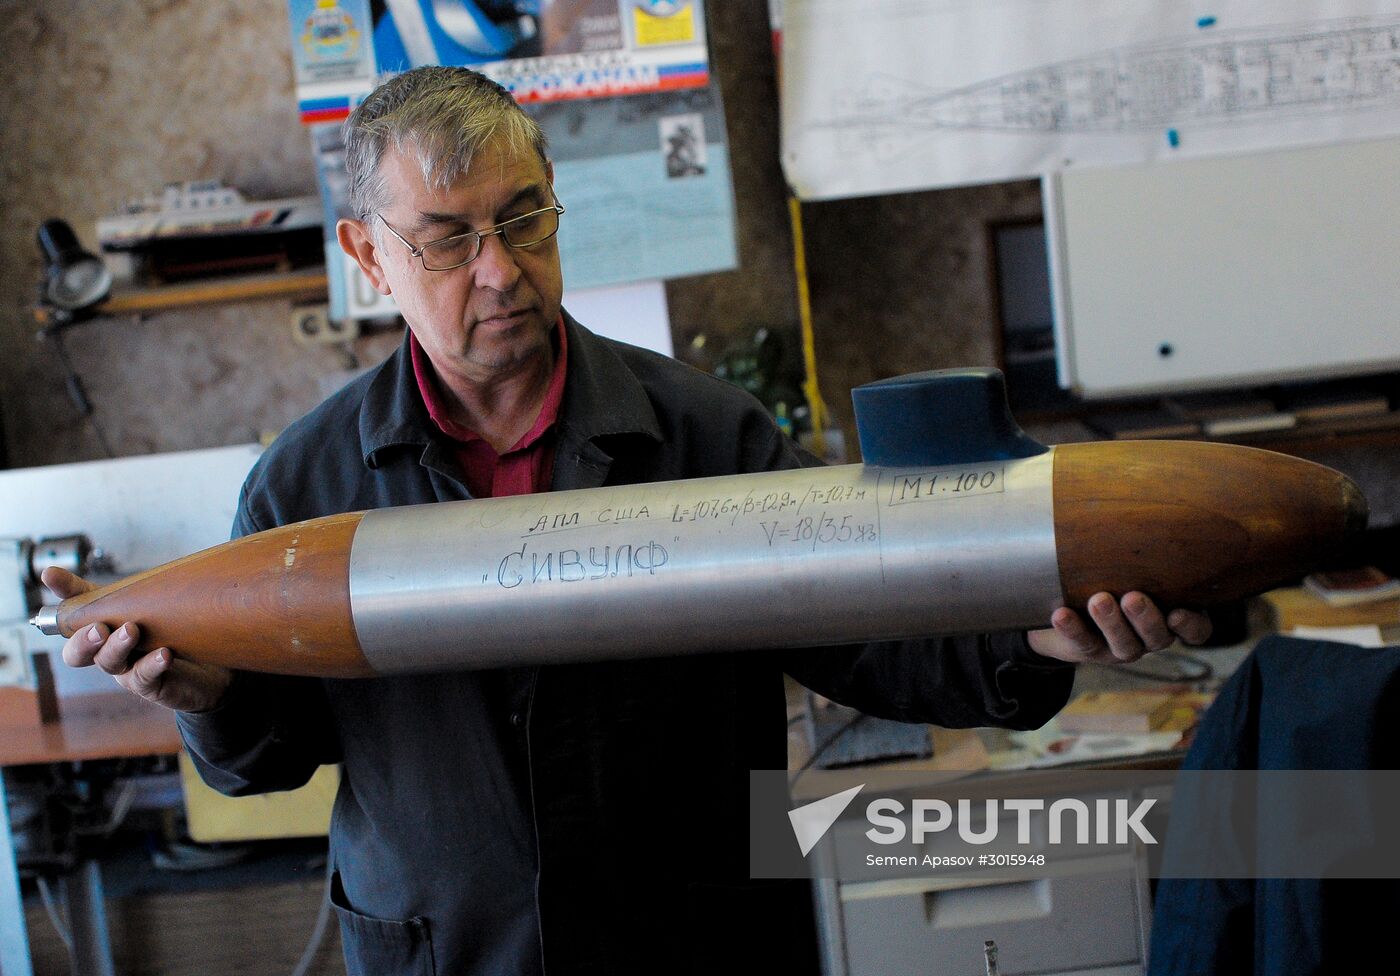 Valentin Gulyayev from Vladivostok builds functional submarine models